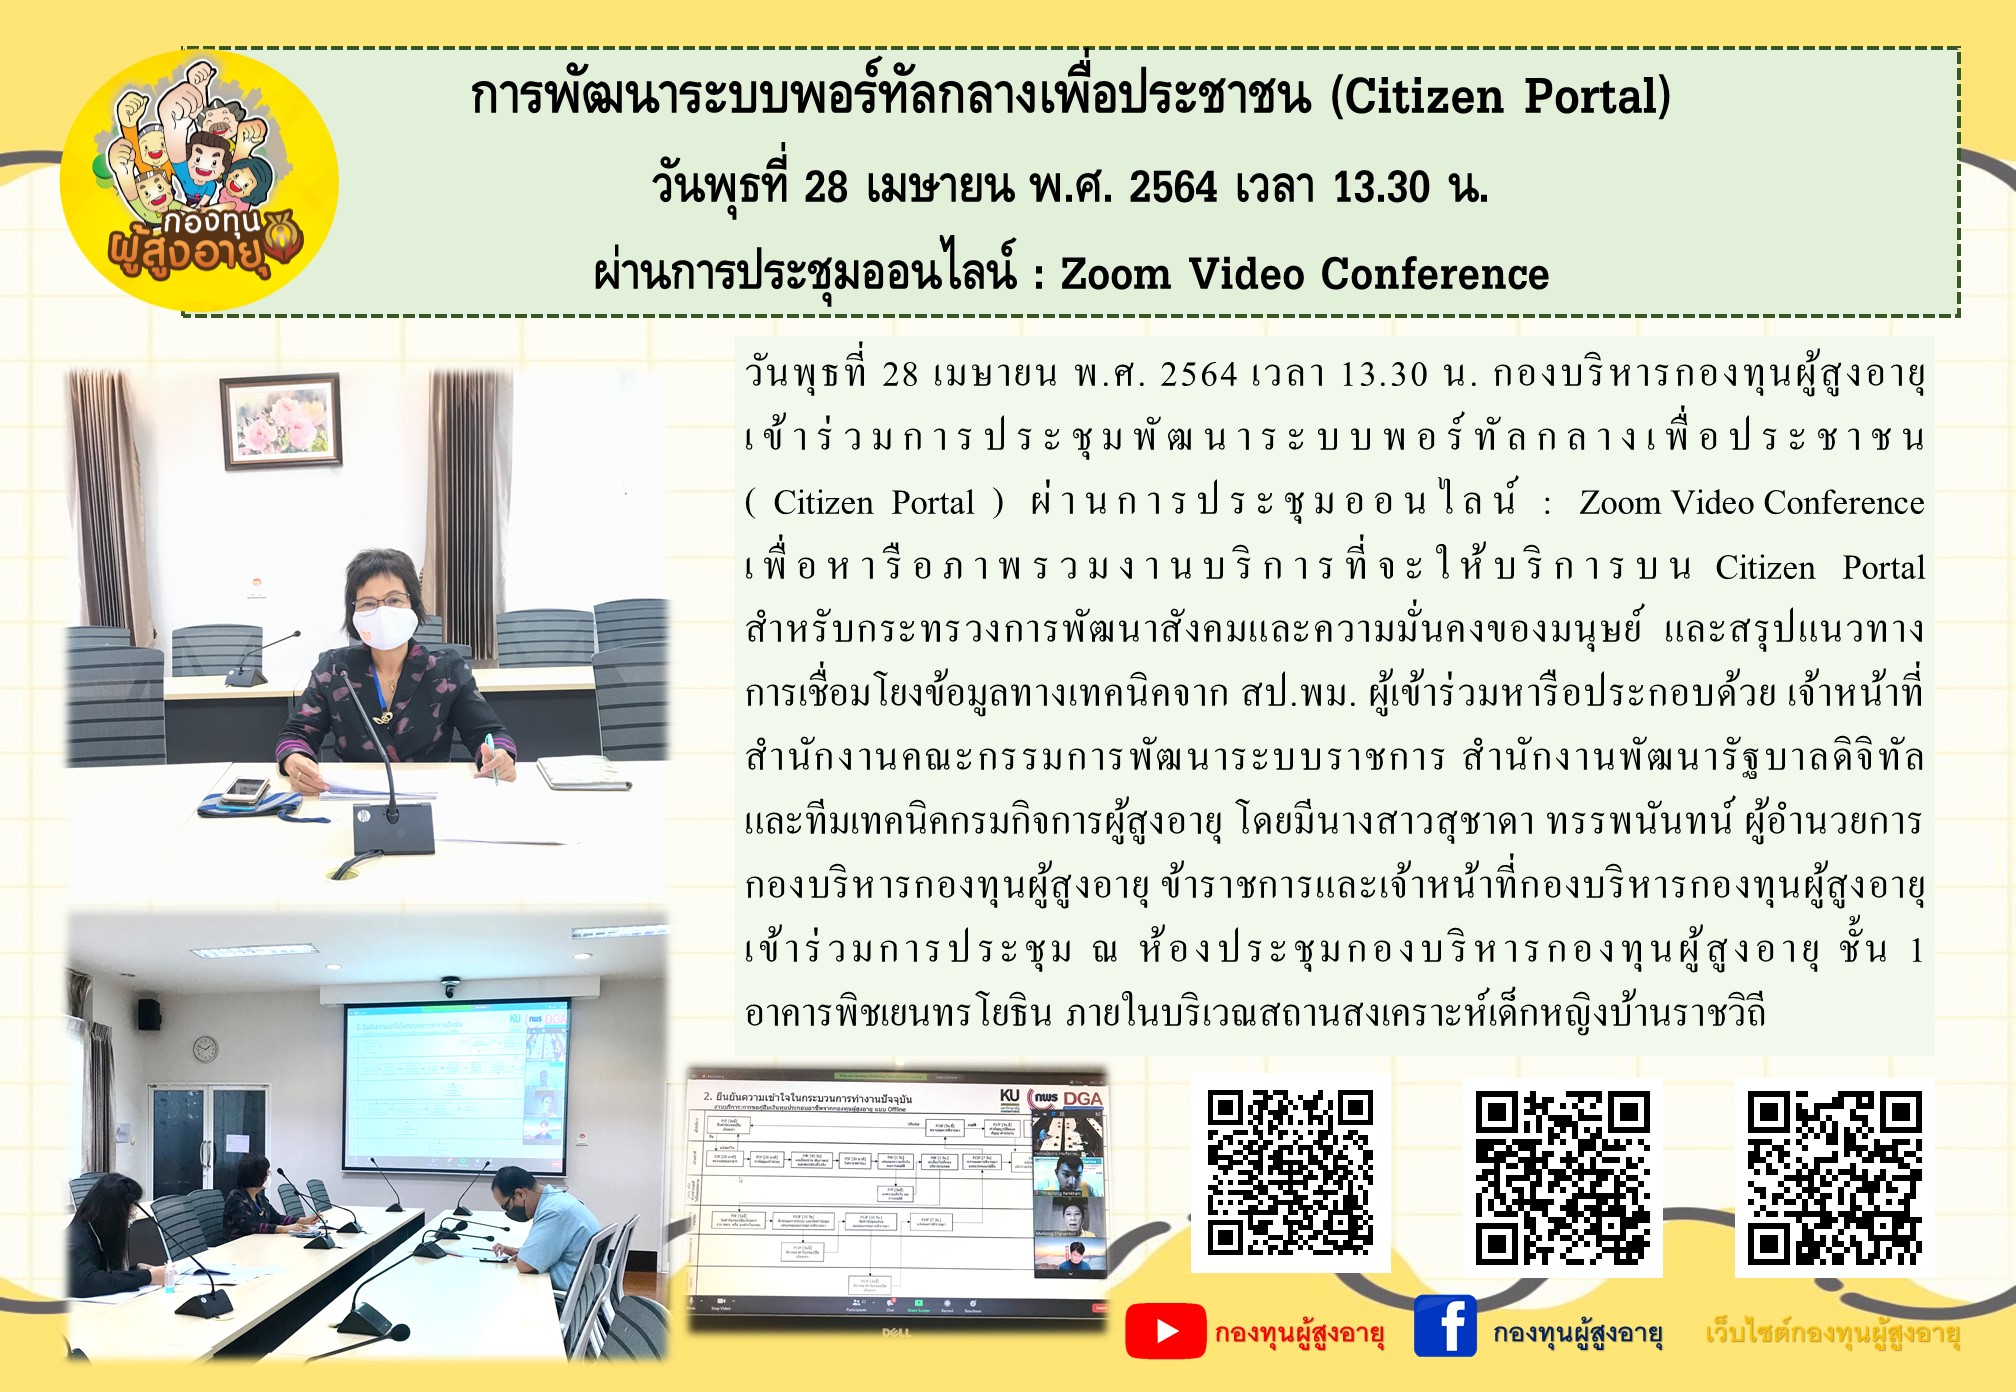 การพัฒนาระบบพอร์ทัลกลางเพื่อประชาชน (Citizen Portal) วันพุธที่ 28 เมษายน พ.ศ. 2564 เวลา 13.30 น. ผ่านการประชุมออนไลน์ : Zoom Video Conference